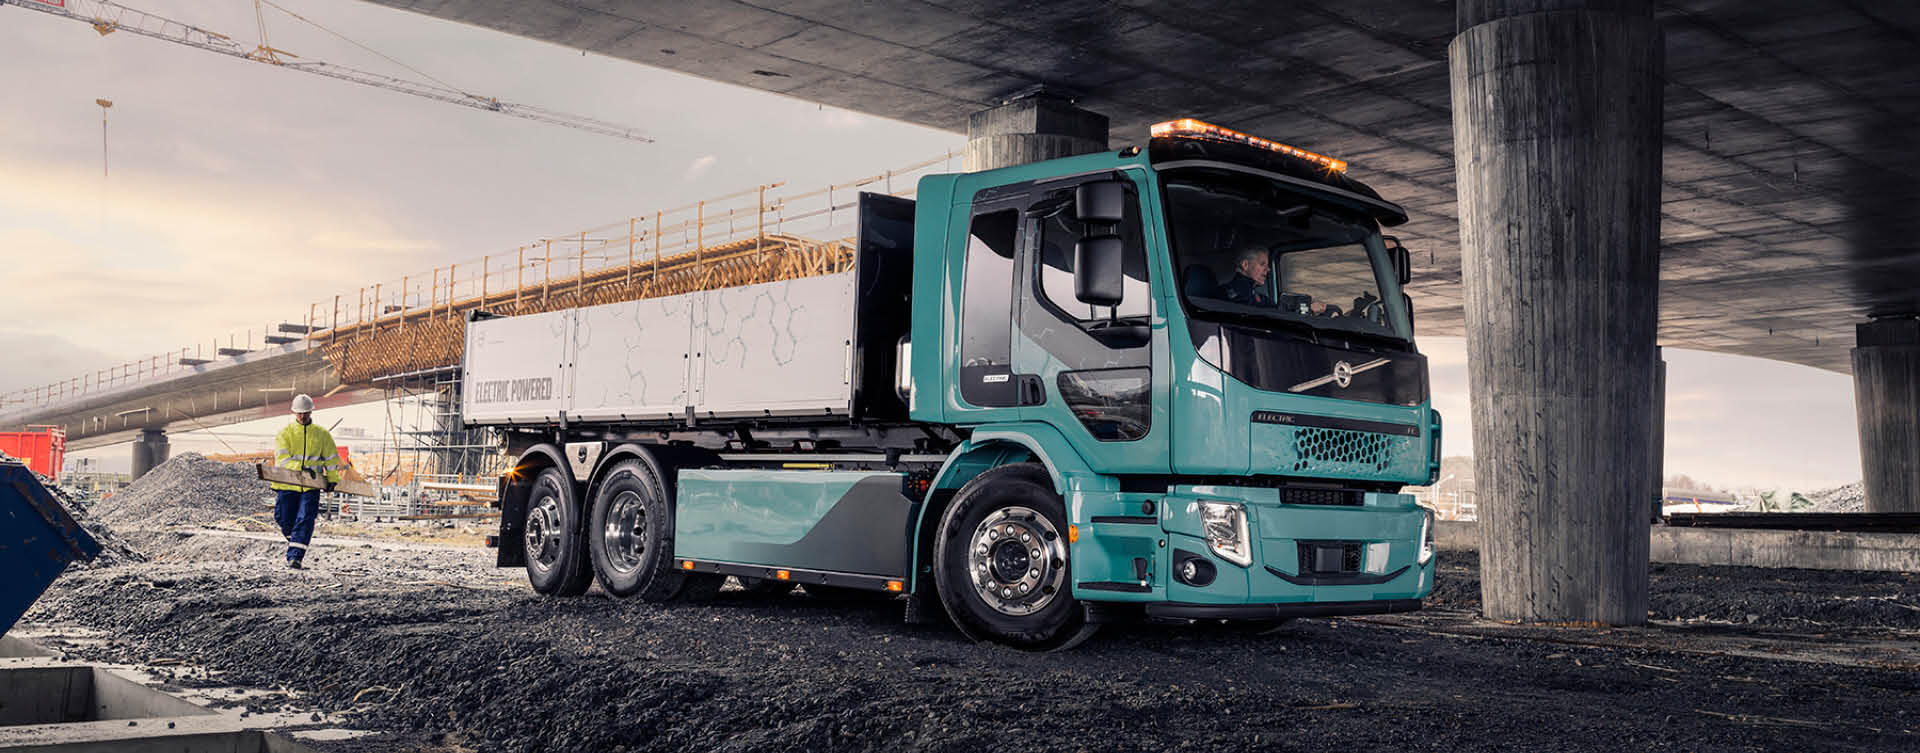 Primeur voor Renewi met eerste elektrische Volvo-truck